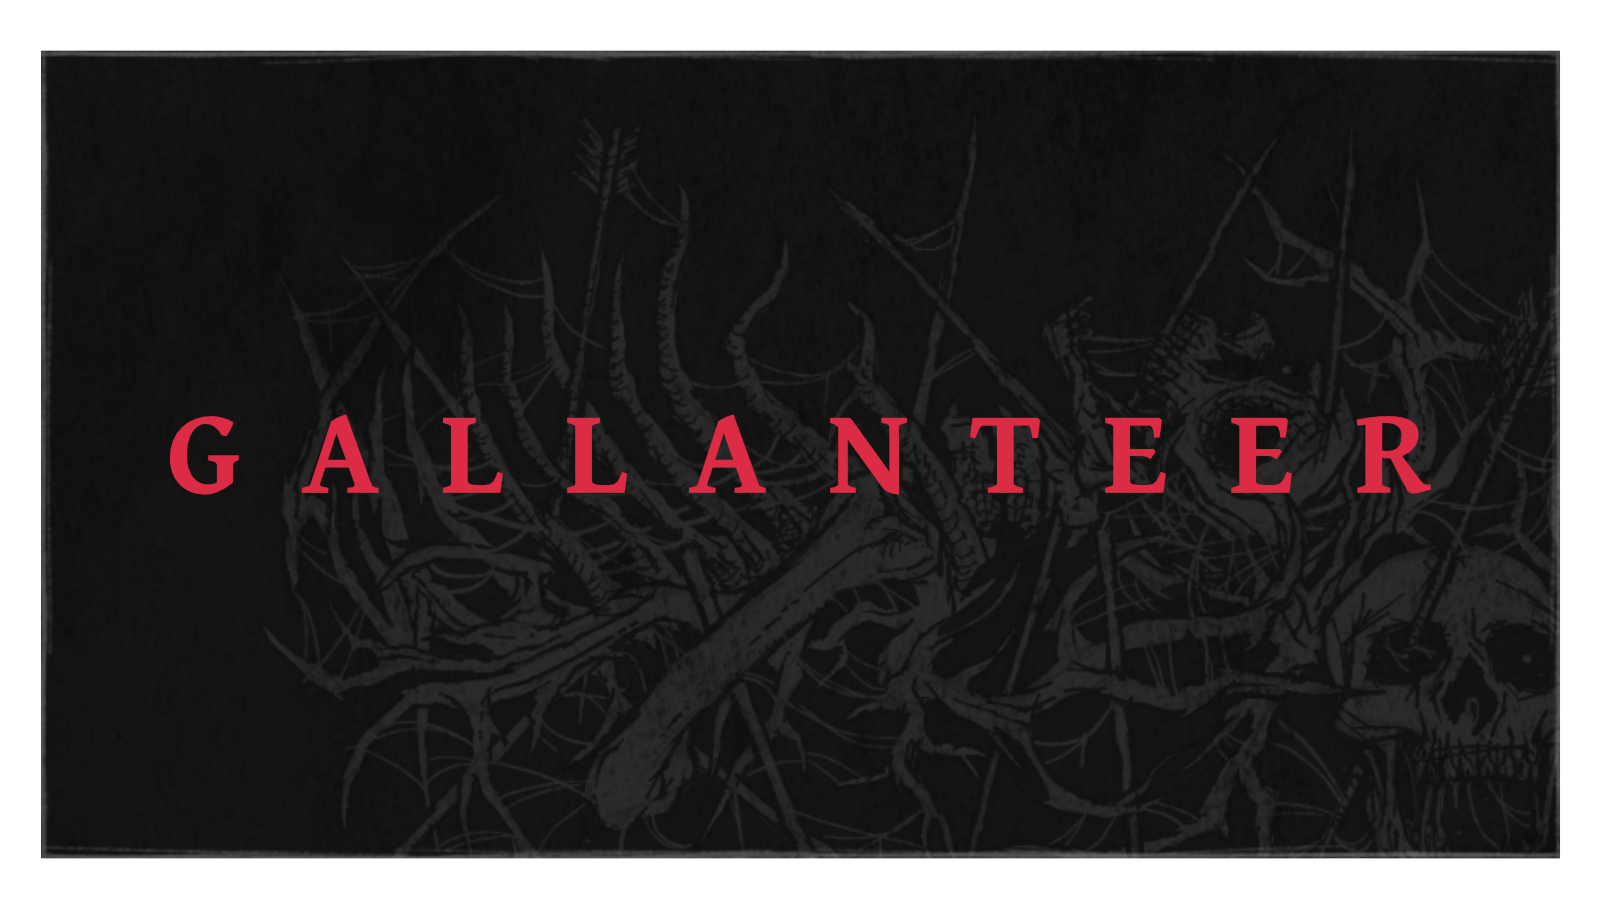 Das Titelbild zur Projektvorstellung von Gallanteer, das das rote Logo auf dunklem Hintergrund zeigt